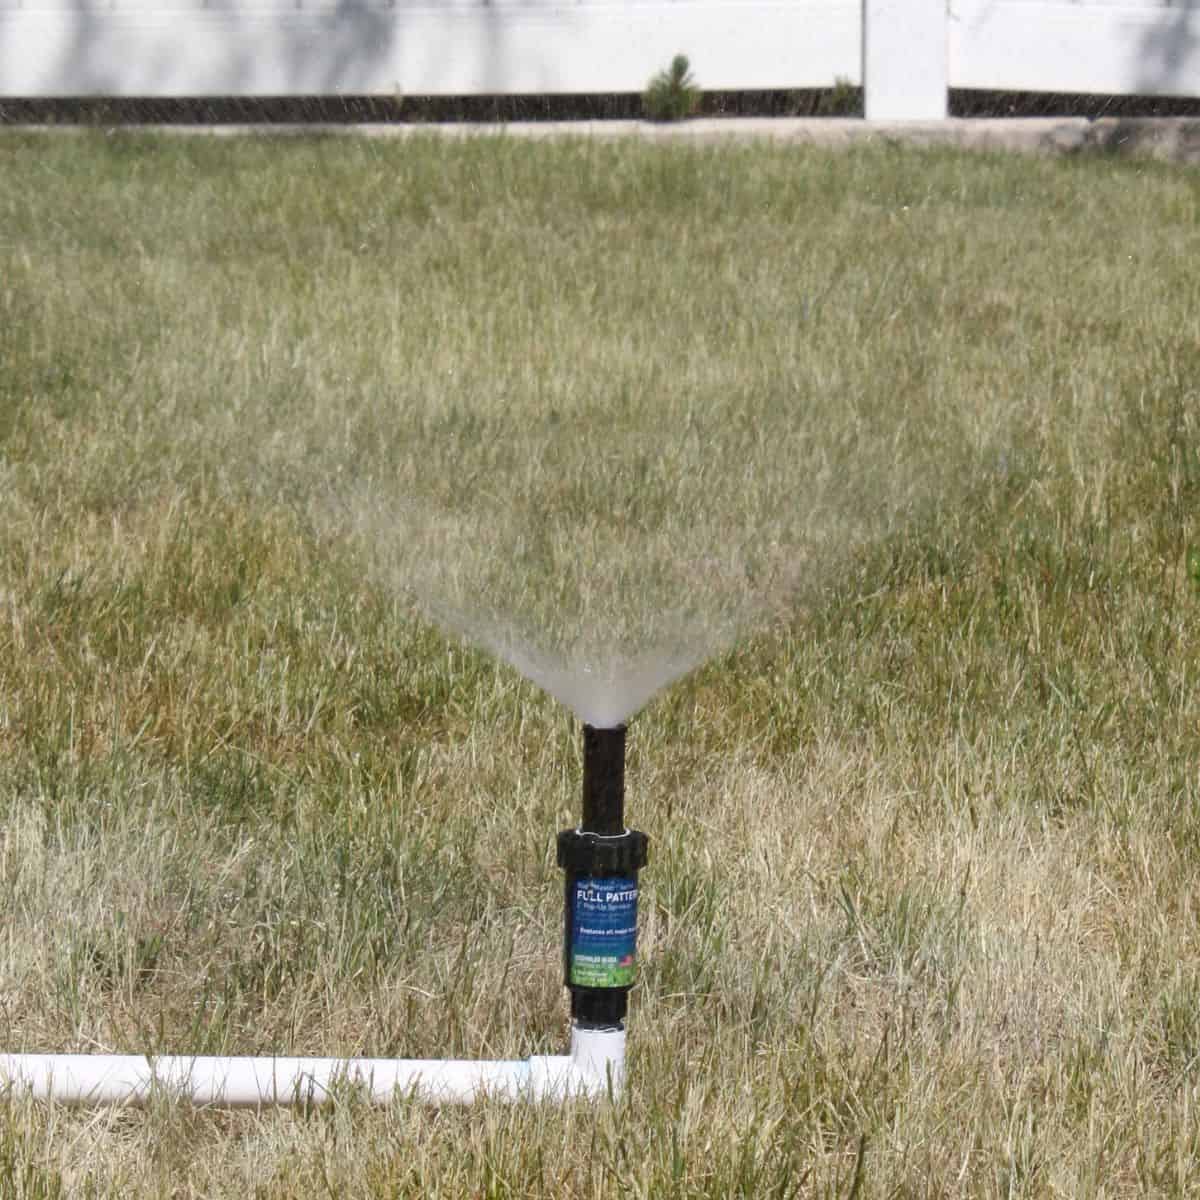 How To Make A Sprinkler How to Make an Above Ground Sprinkler System - The Crafty Blog Stalker